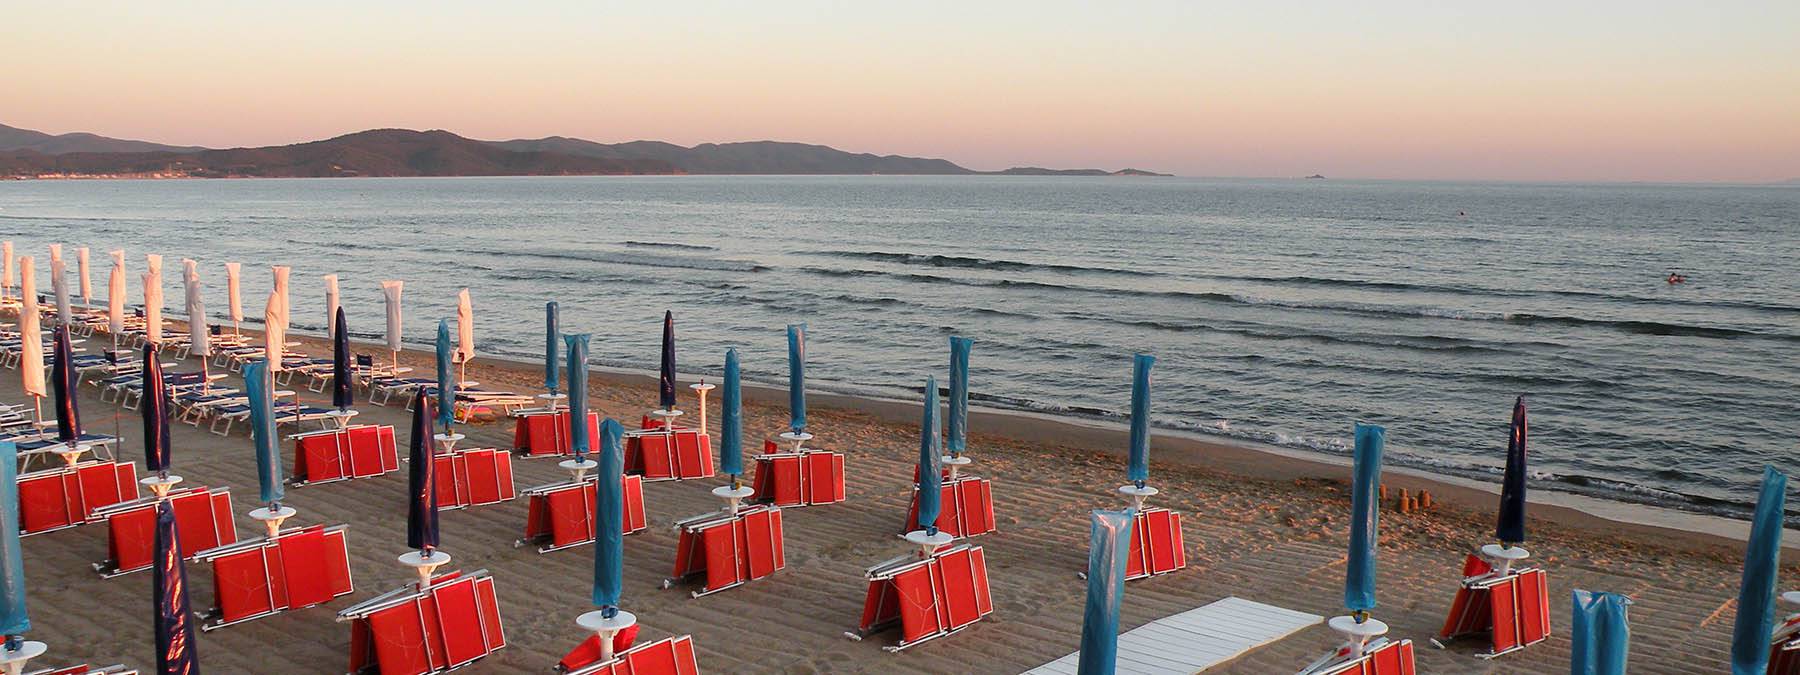 Familienurlaub in einem Hotel mit Restaurant und Strand in der Toskana